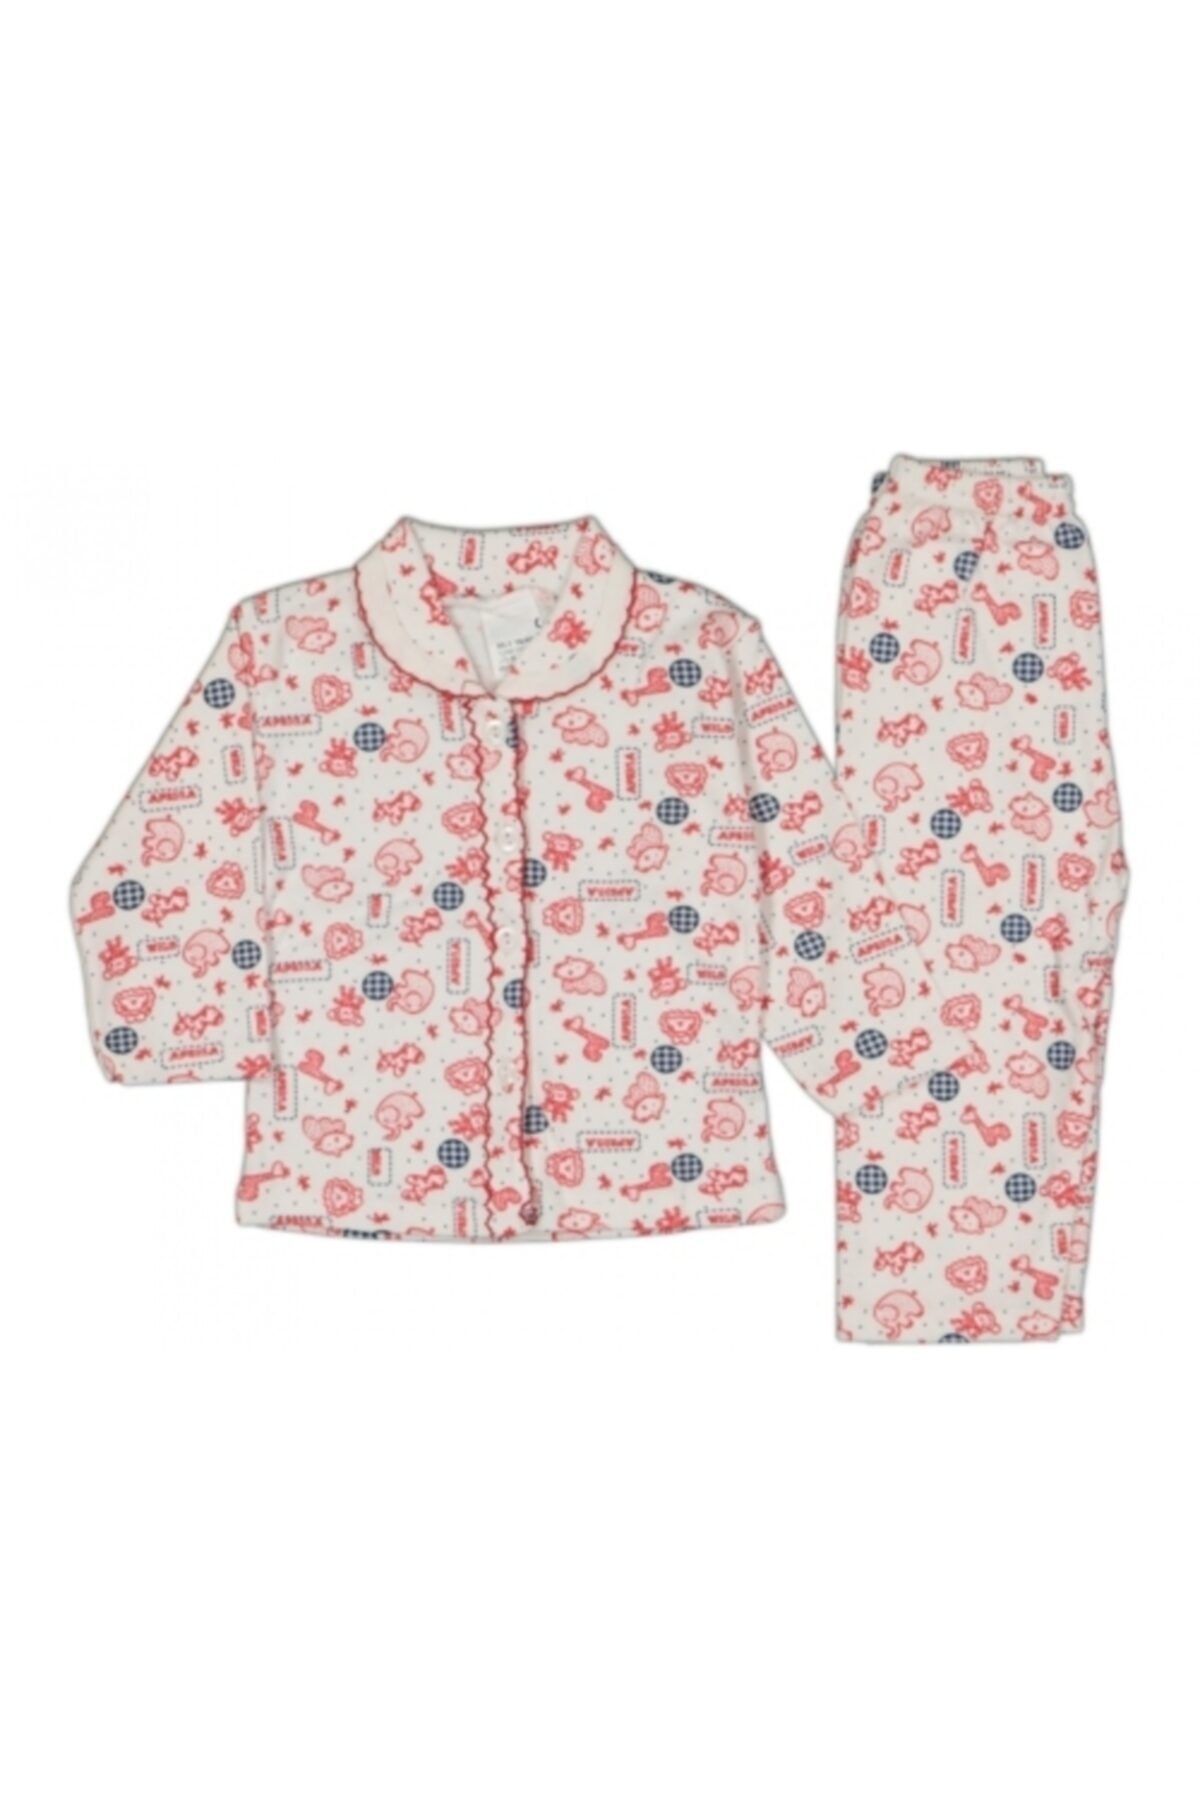 Güler Erkek Kız Bebek Önden Düğmeli Pijama Takımı